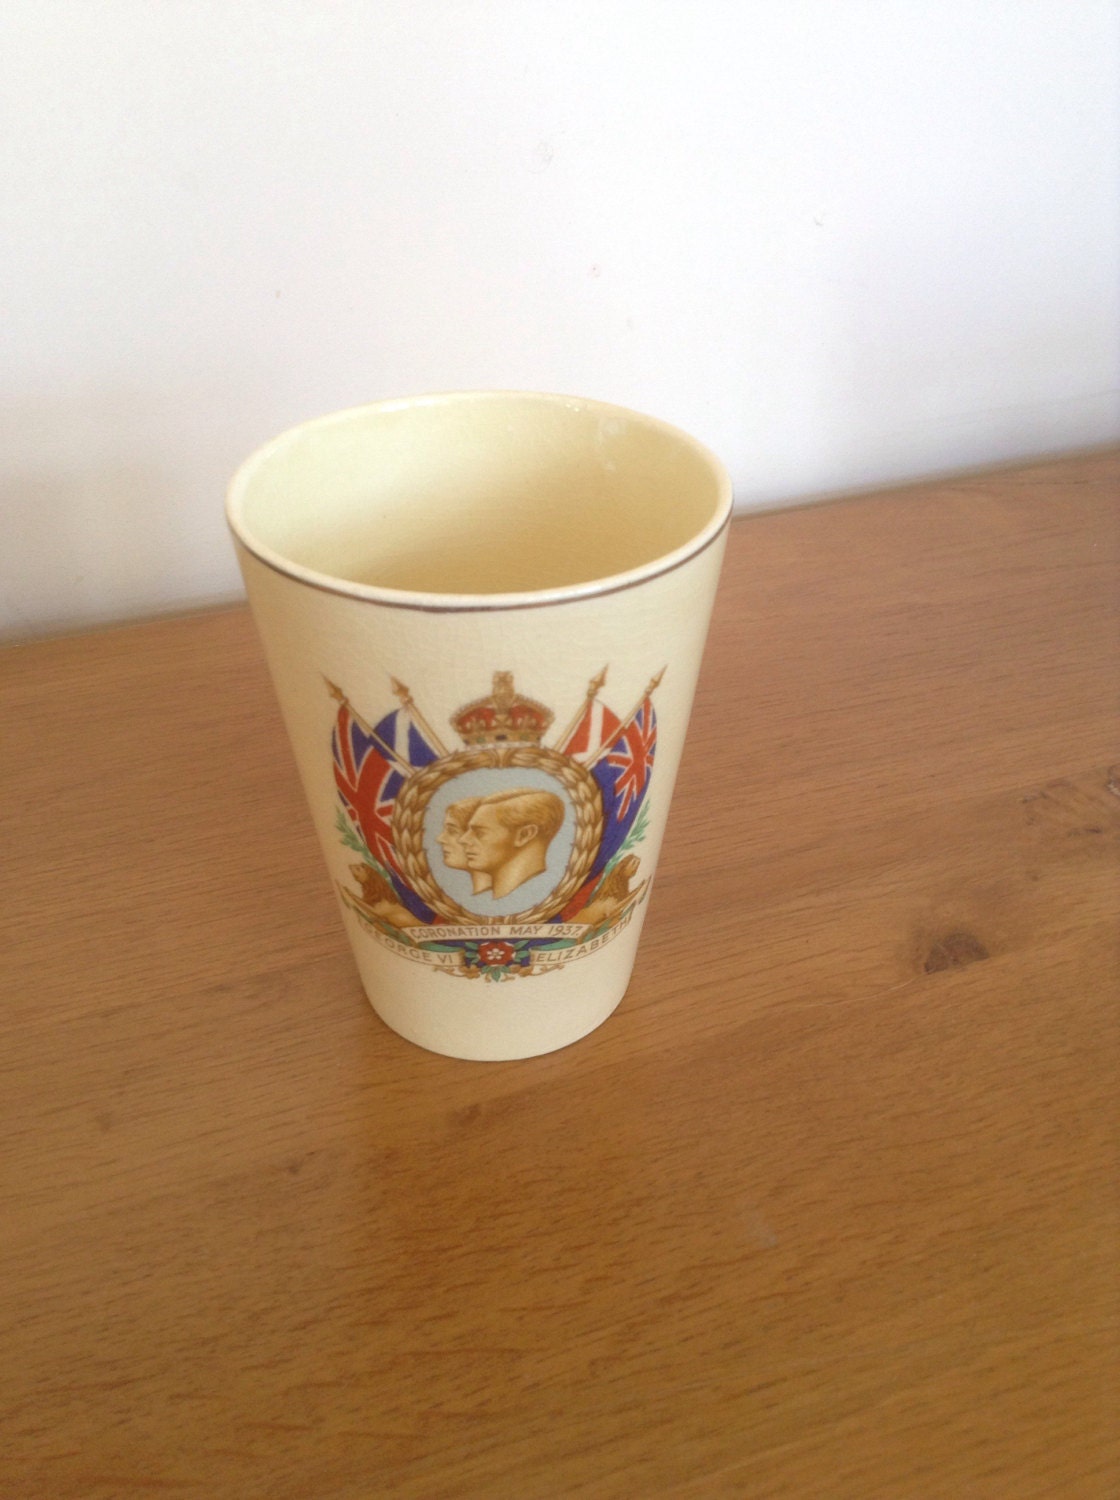 1937 coronation mug